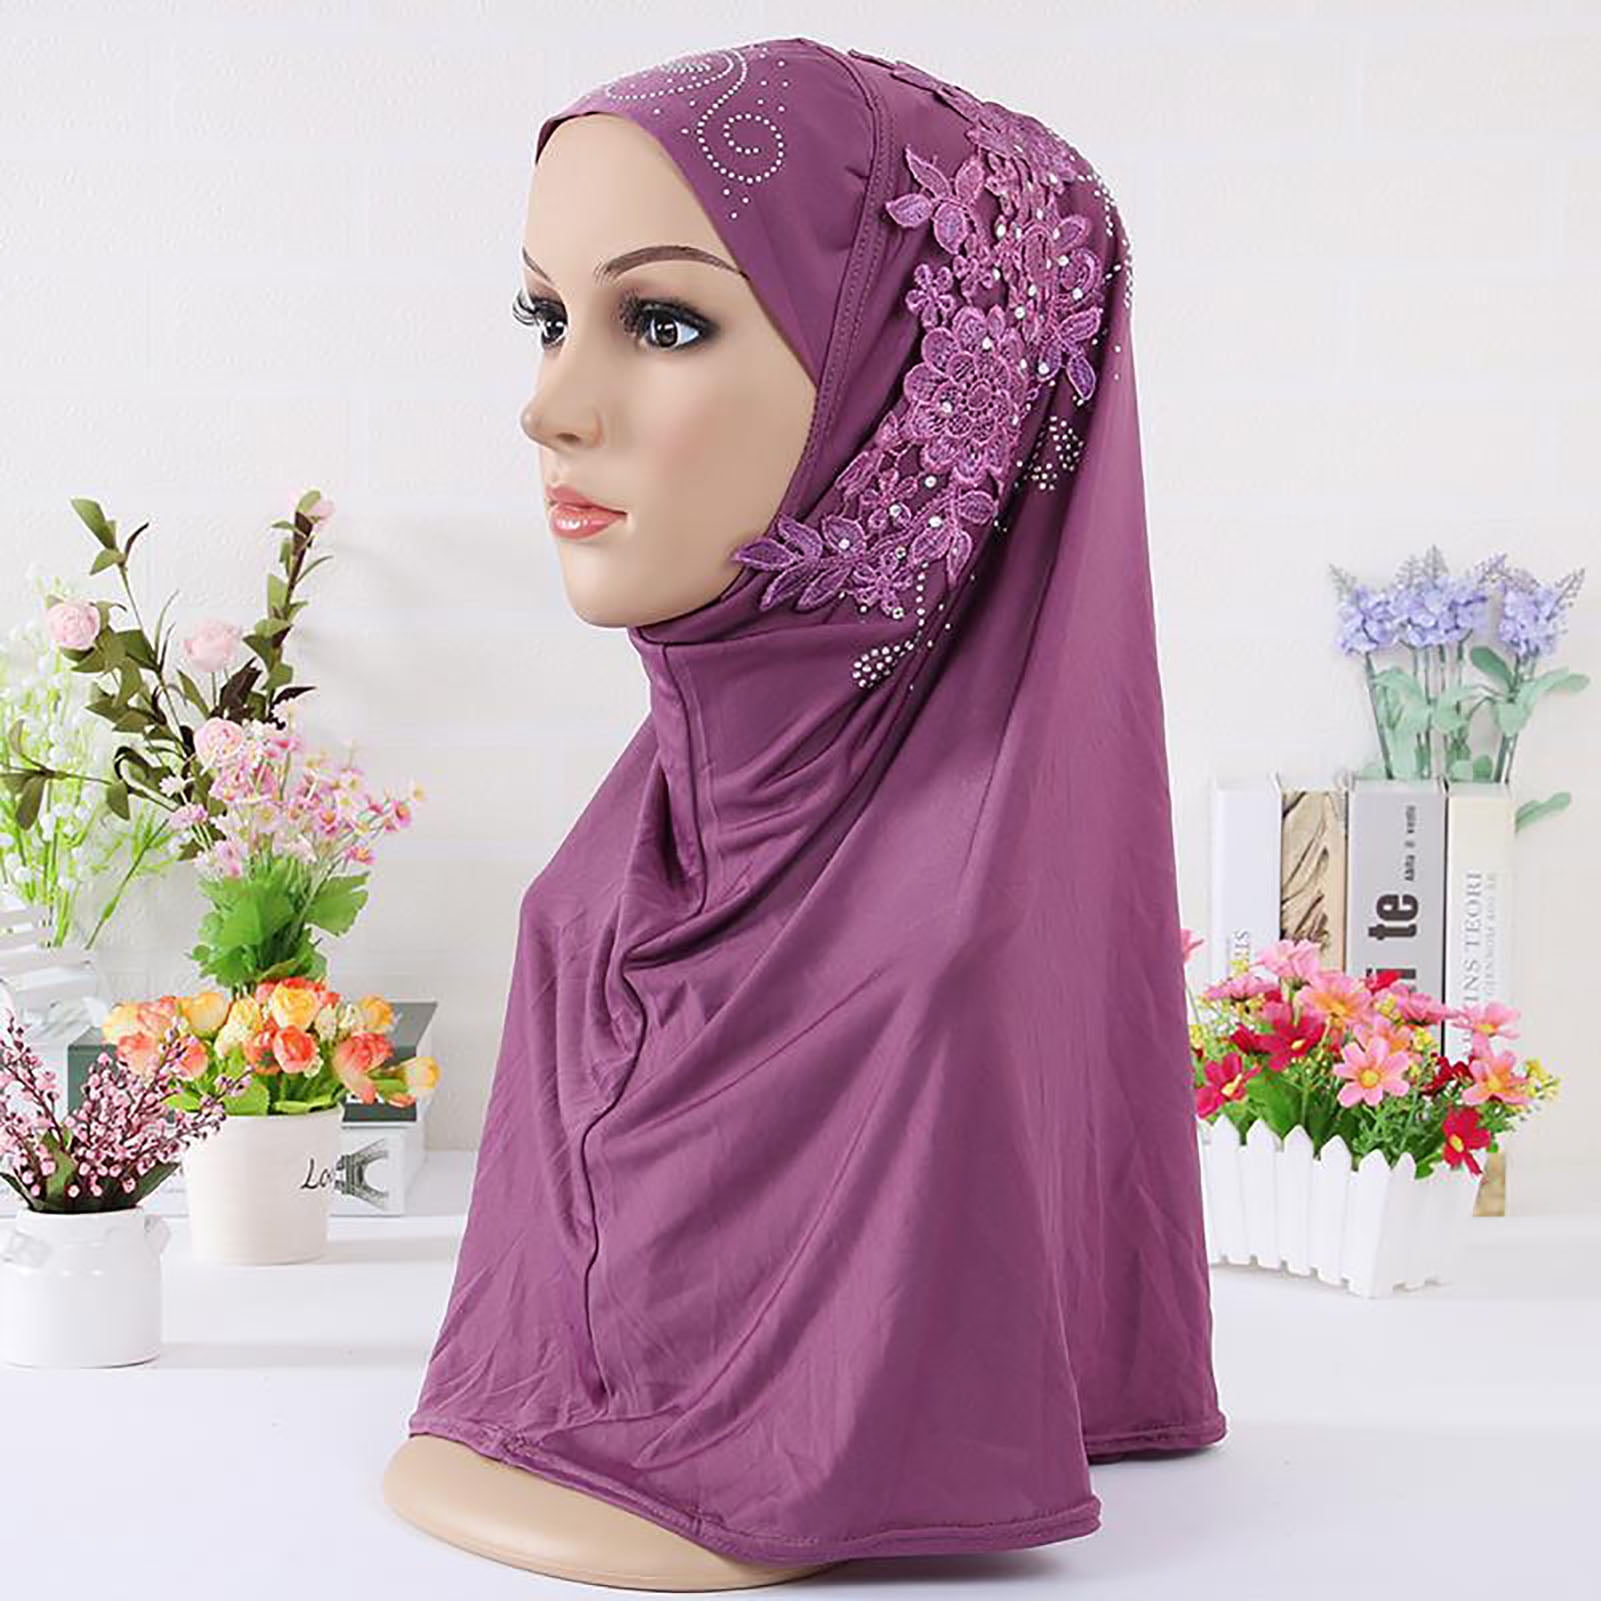 Walbest 1 Piece Women Girls Solid Color Muslim Hijab Islamic Lace Applique  Head Wrap Shawl Long Scarf Wrap Scarves with Rhinestones, Fashion Headscarf